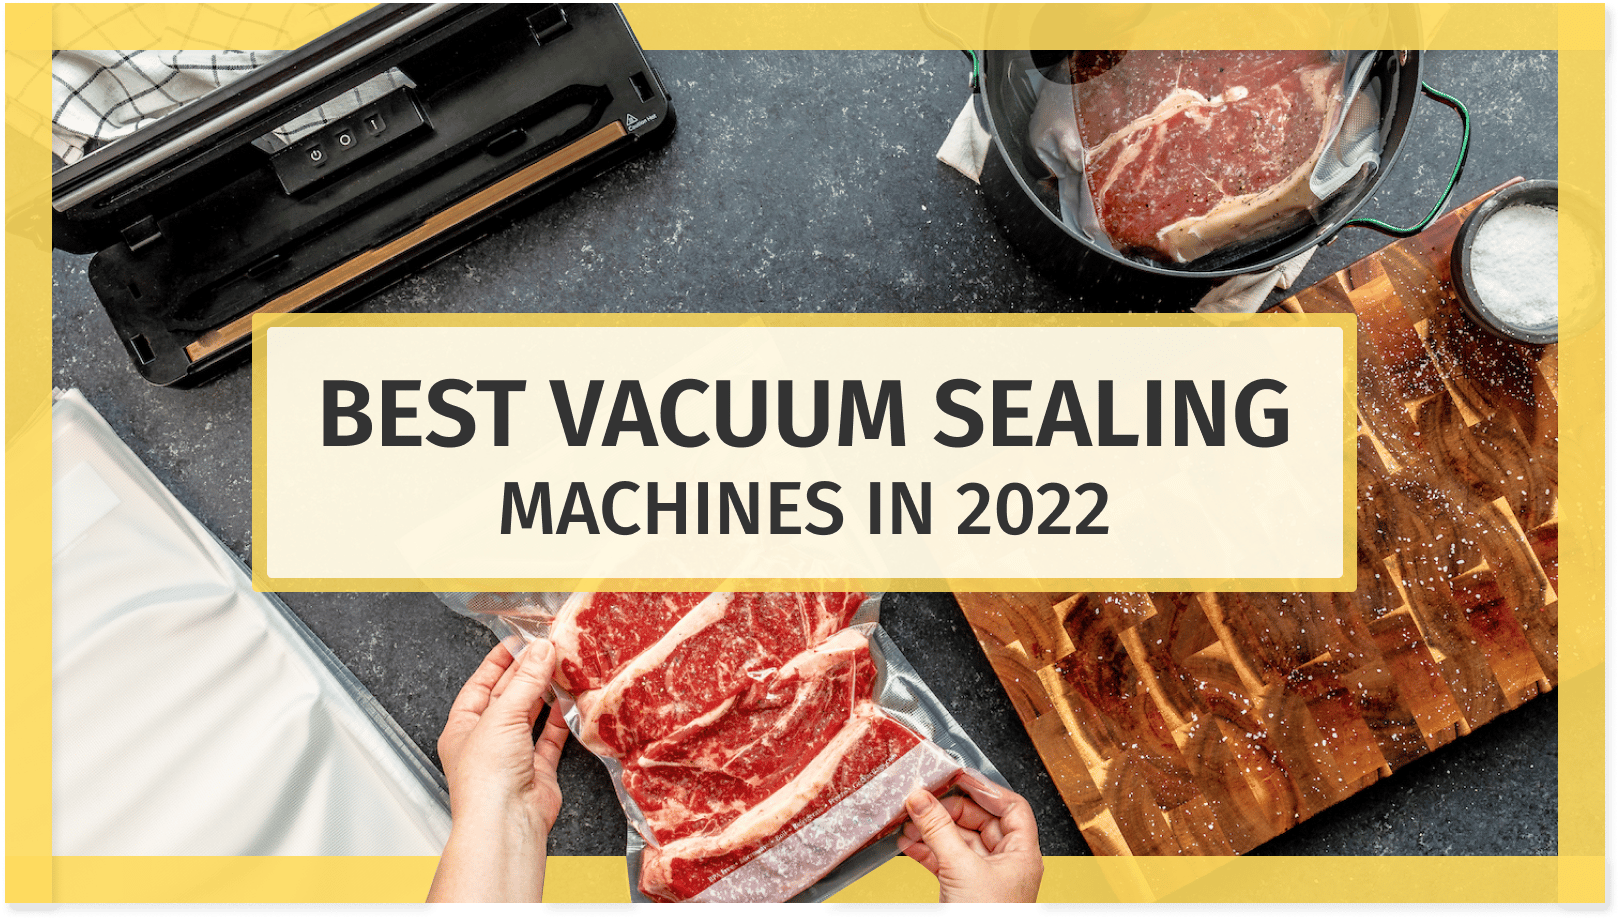 Best Vacuum Sealing Machines in 2022